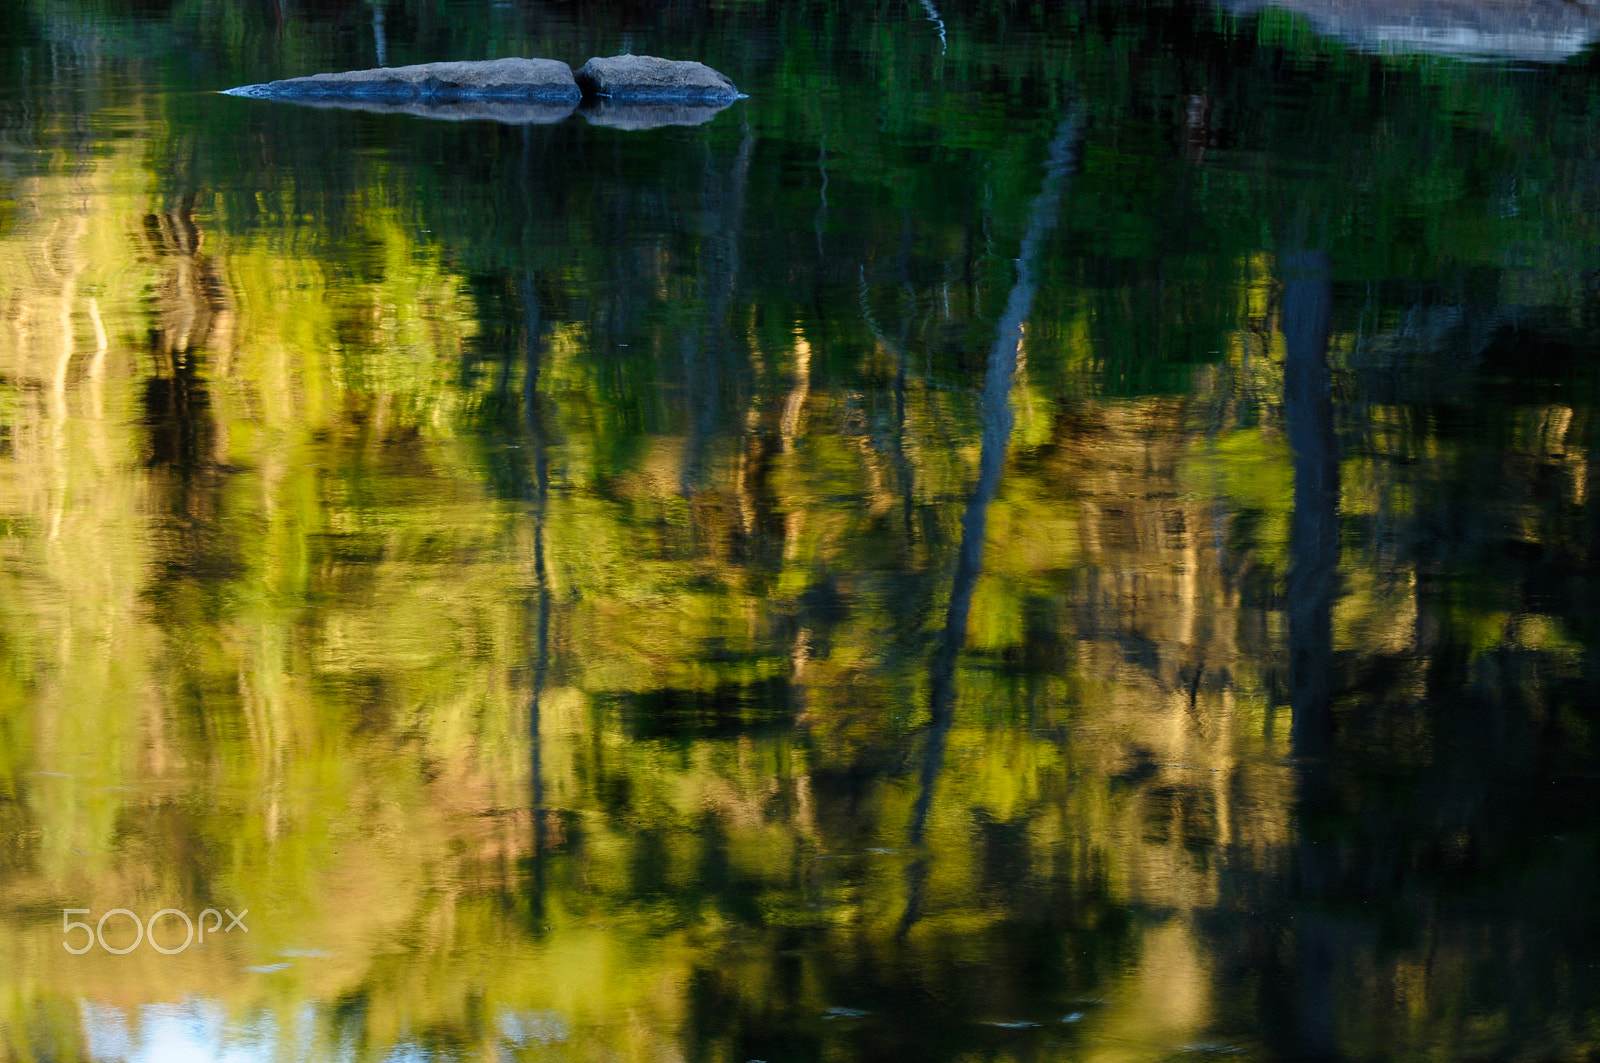 Nikon D90 + AF Zoom-Nikkor 75-300mm f/4.5-5.6 sample photo. Lake reflections photography